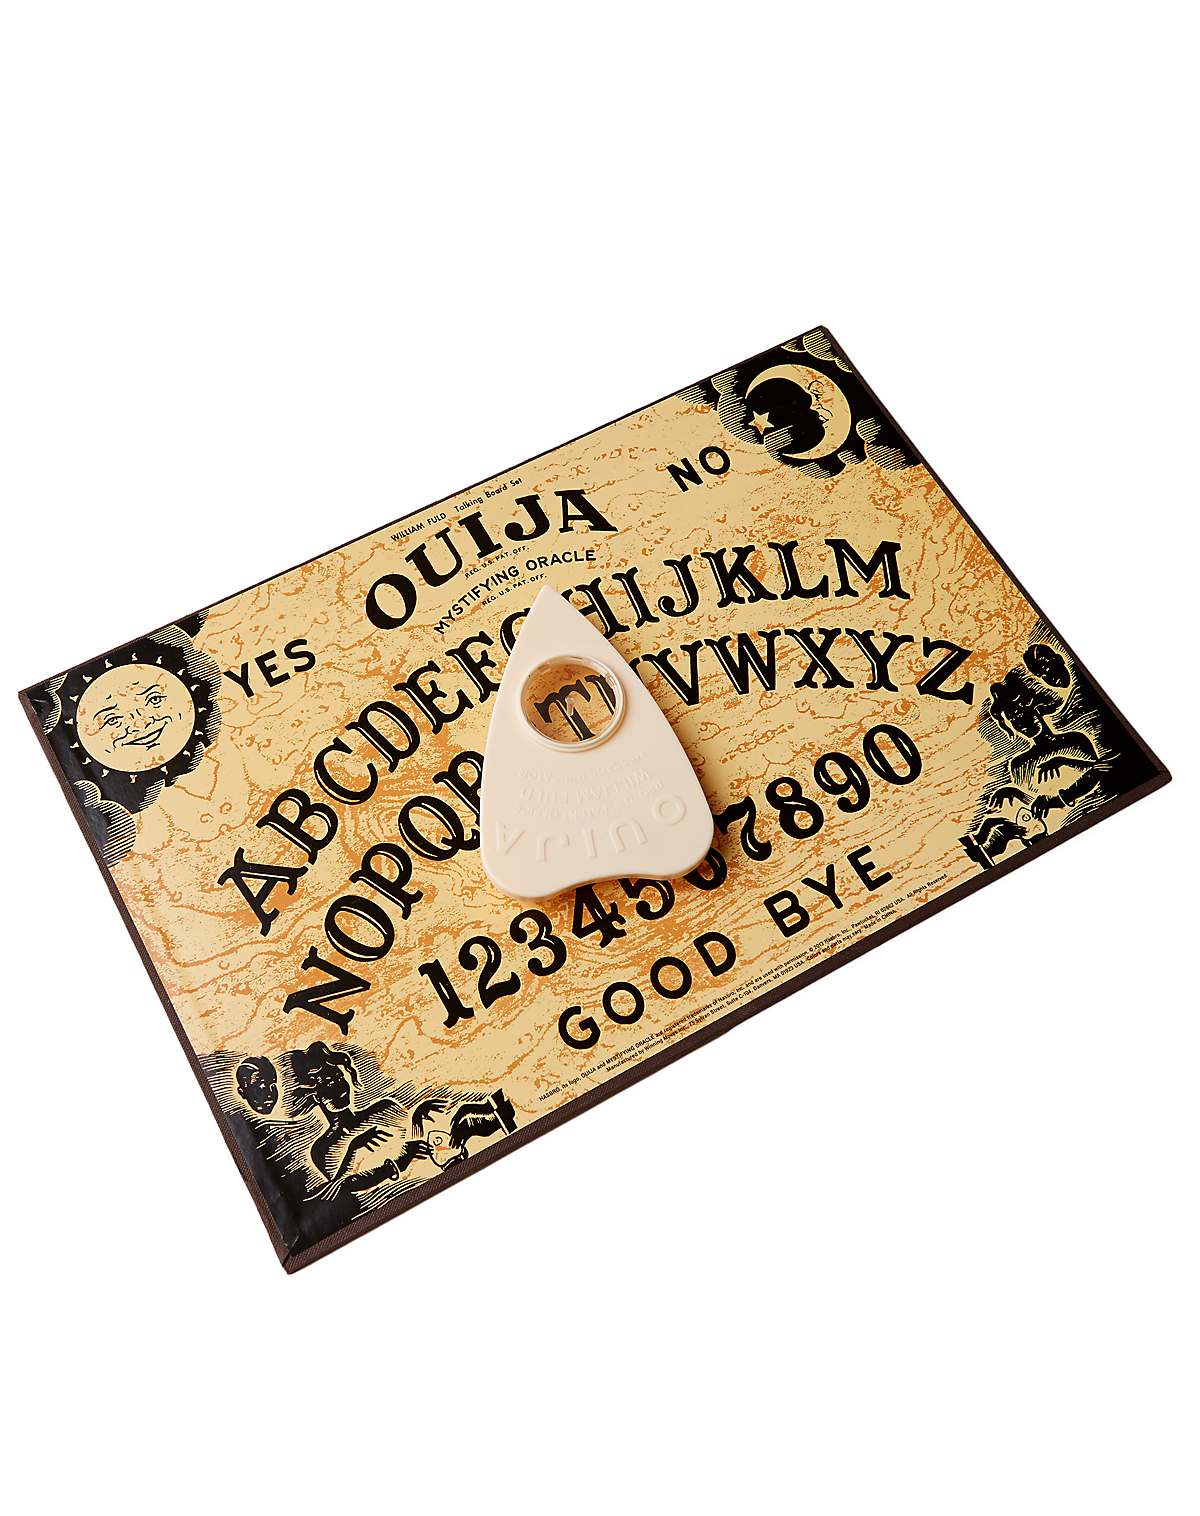 Ouija Board Game - Hasbro